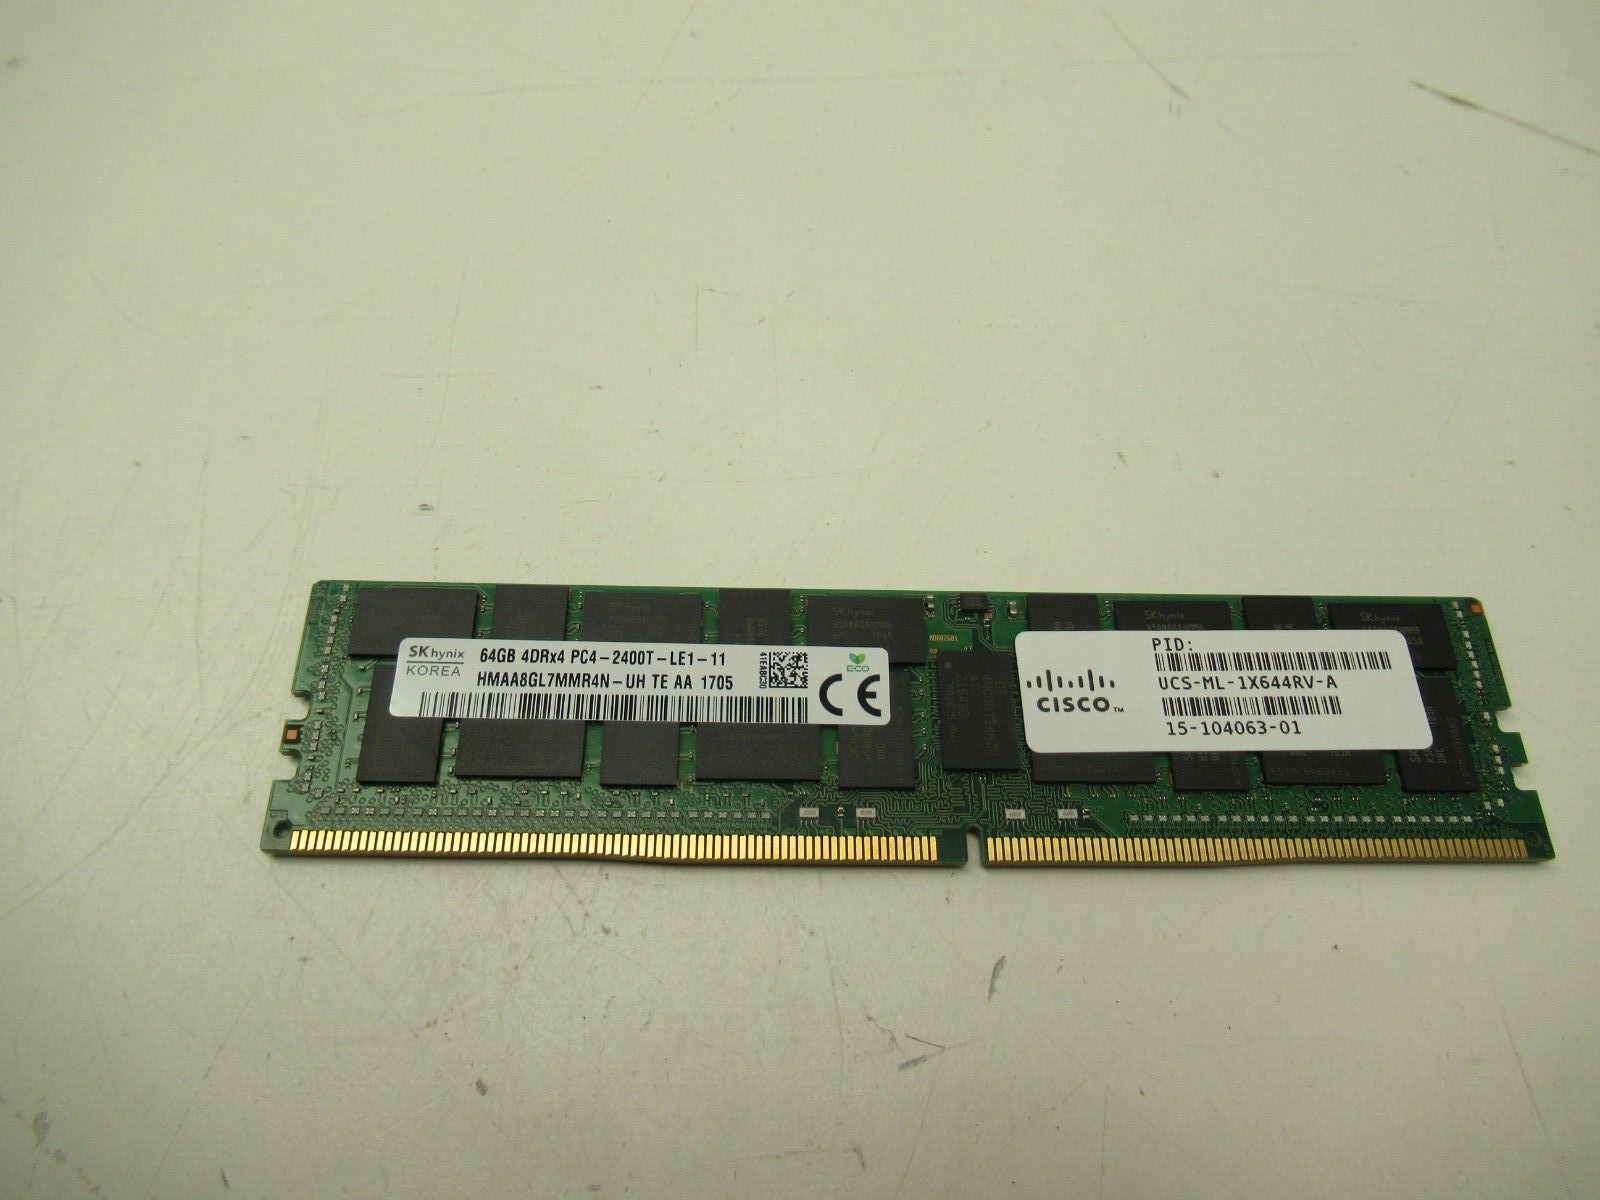 SKhynix 64GB 4DRx4 PC4-2400T HMAA8GL7MMR4N-UH  Server Memory